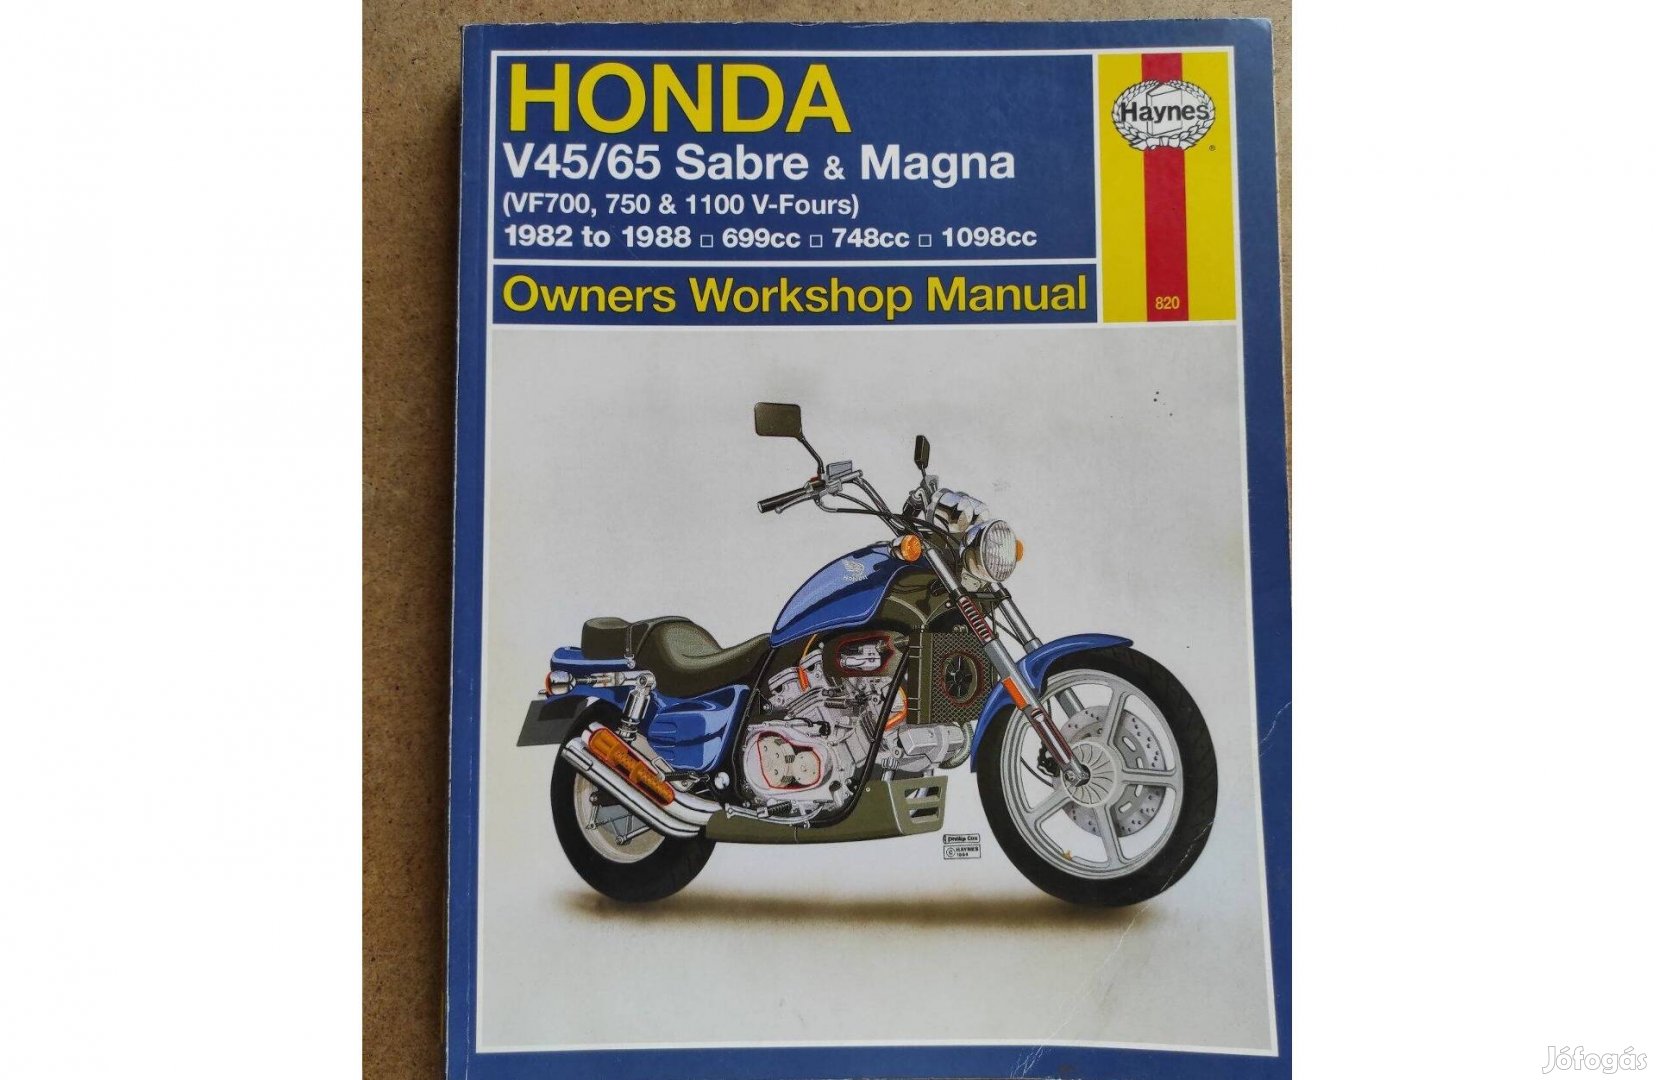 Honda Sabre Magna V45/65 javítási kézikönyv